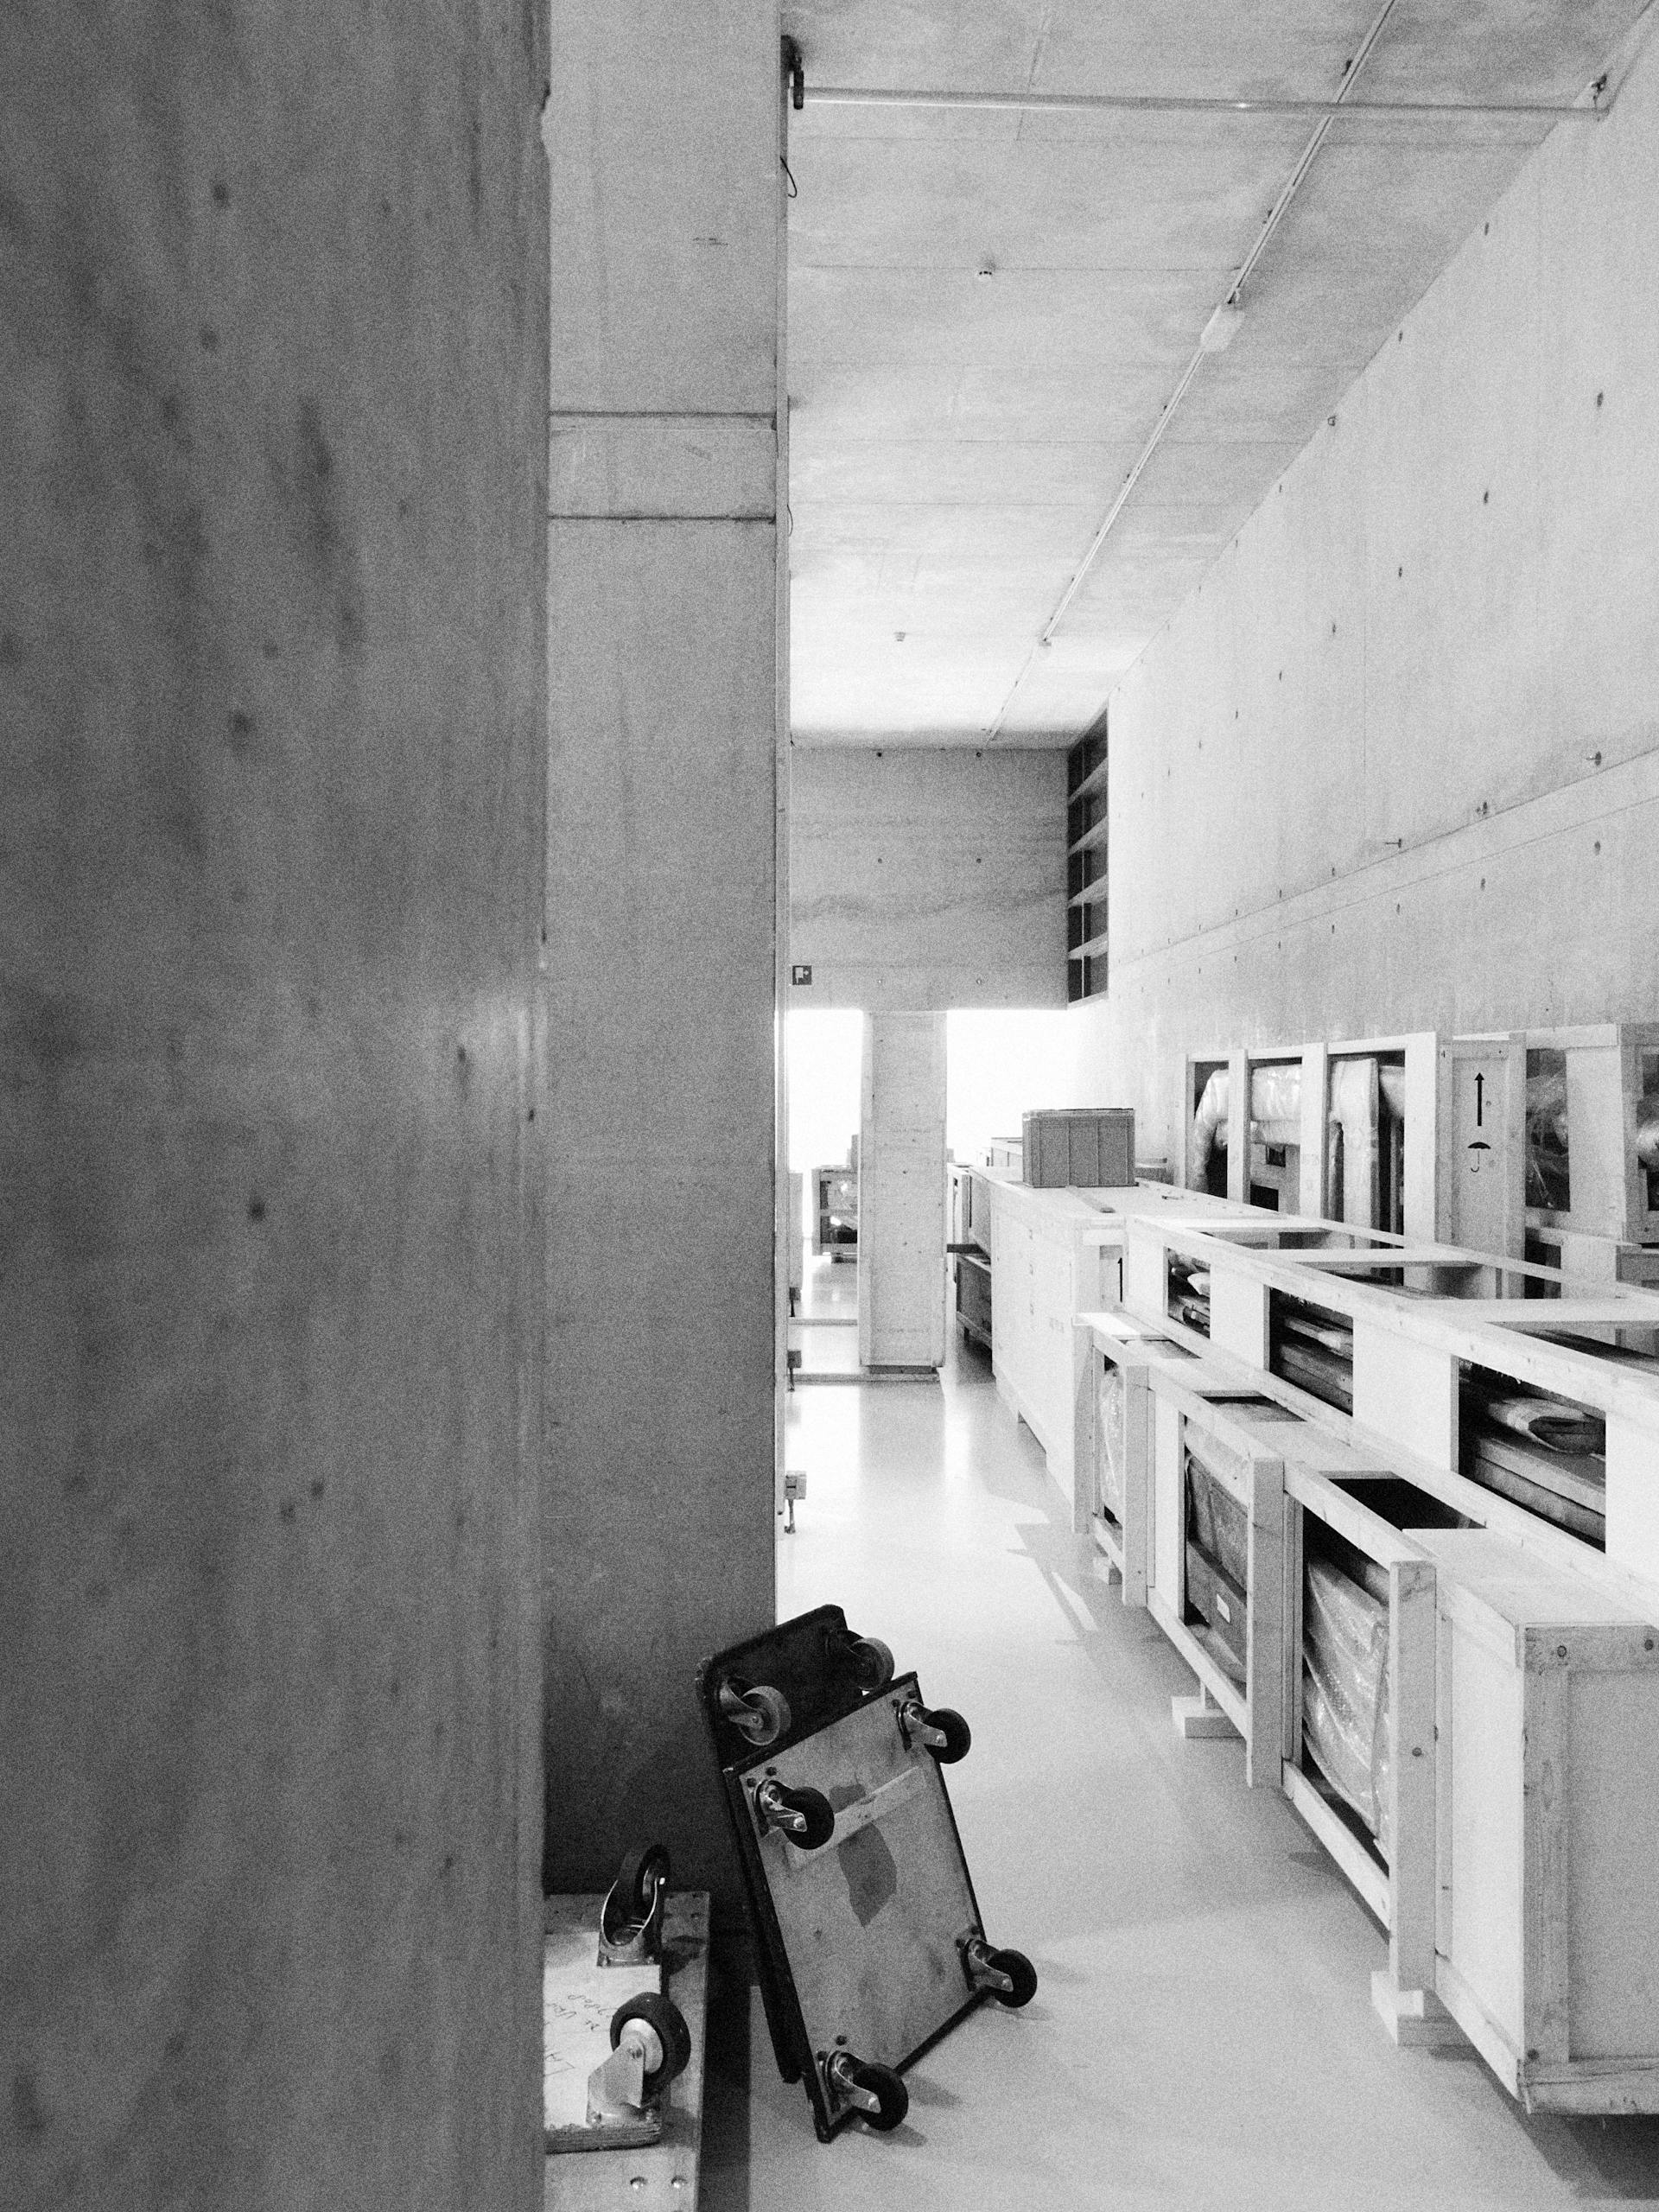 Onderdelen van stijlkamers, verpakt in kisten. Foto Johannes Schwartz